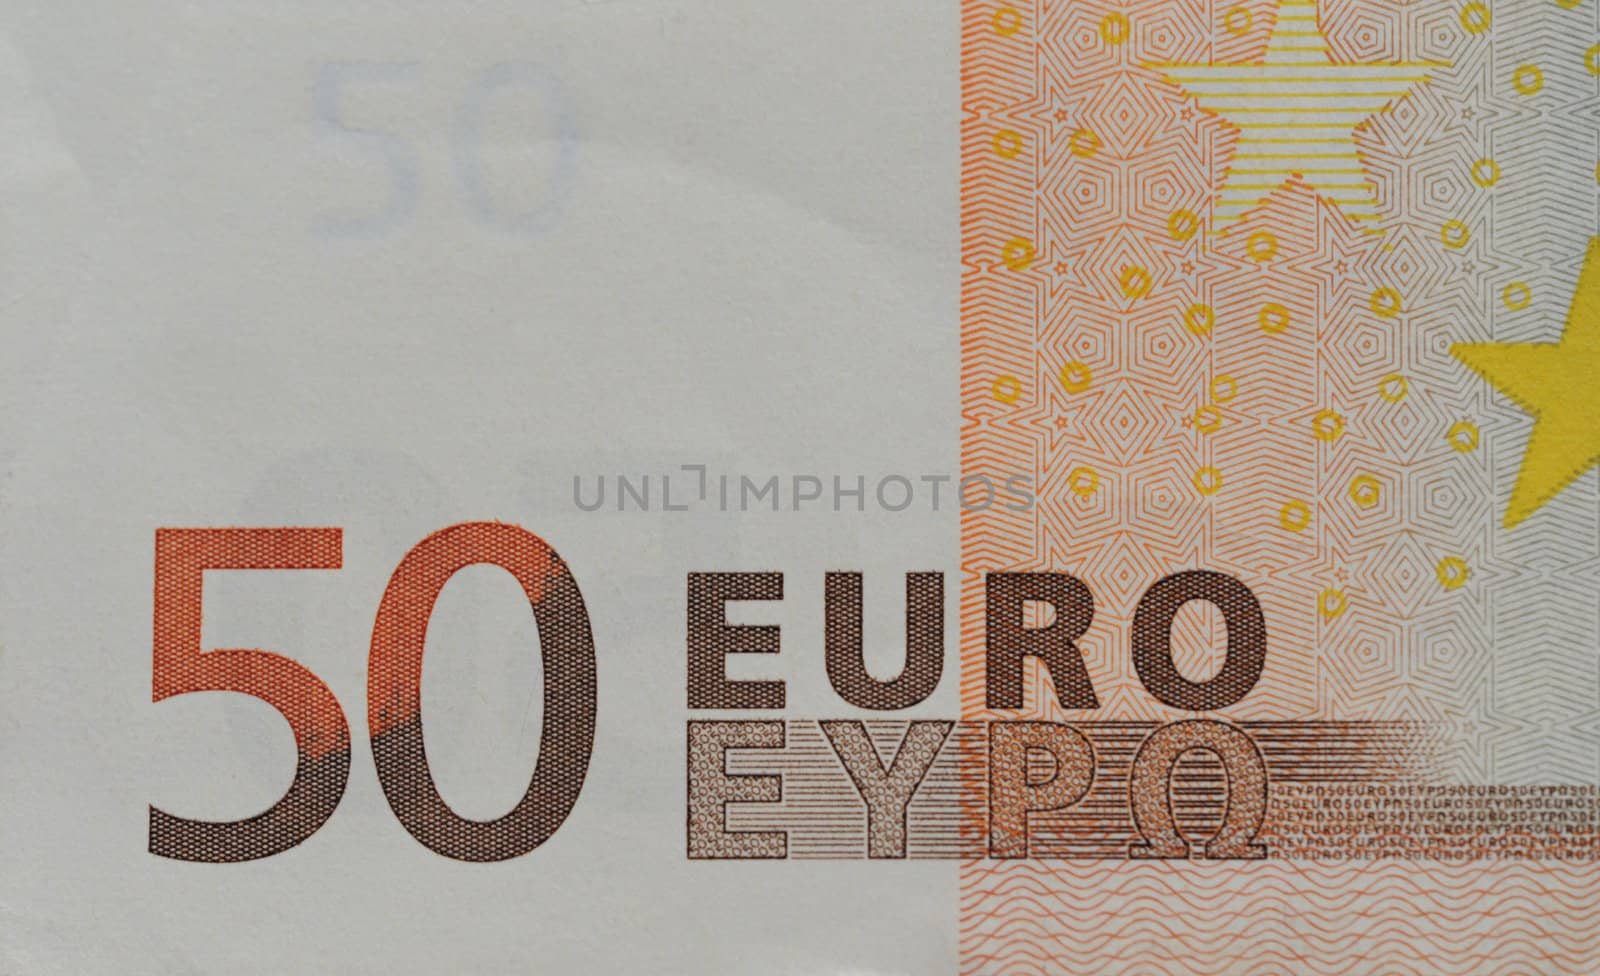 Fifty Euro Bill Macro Details.